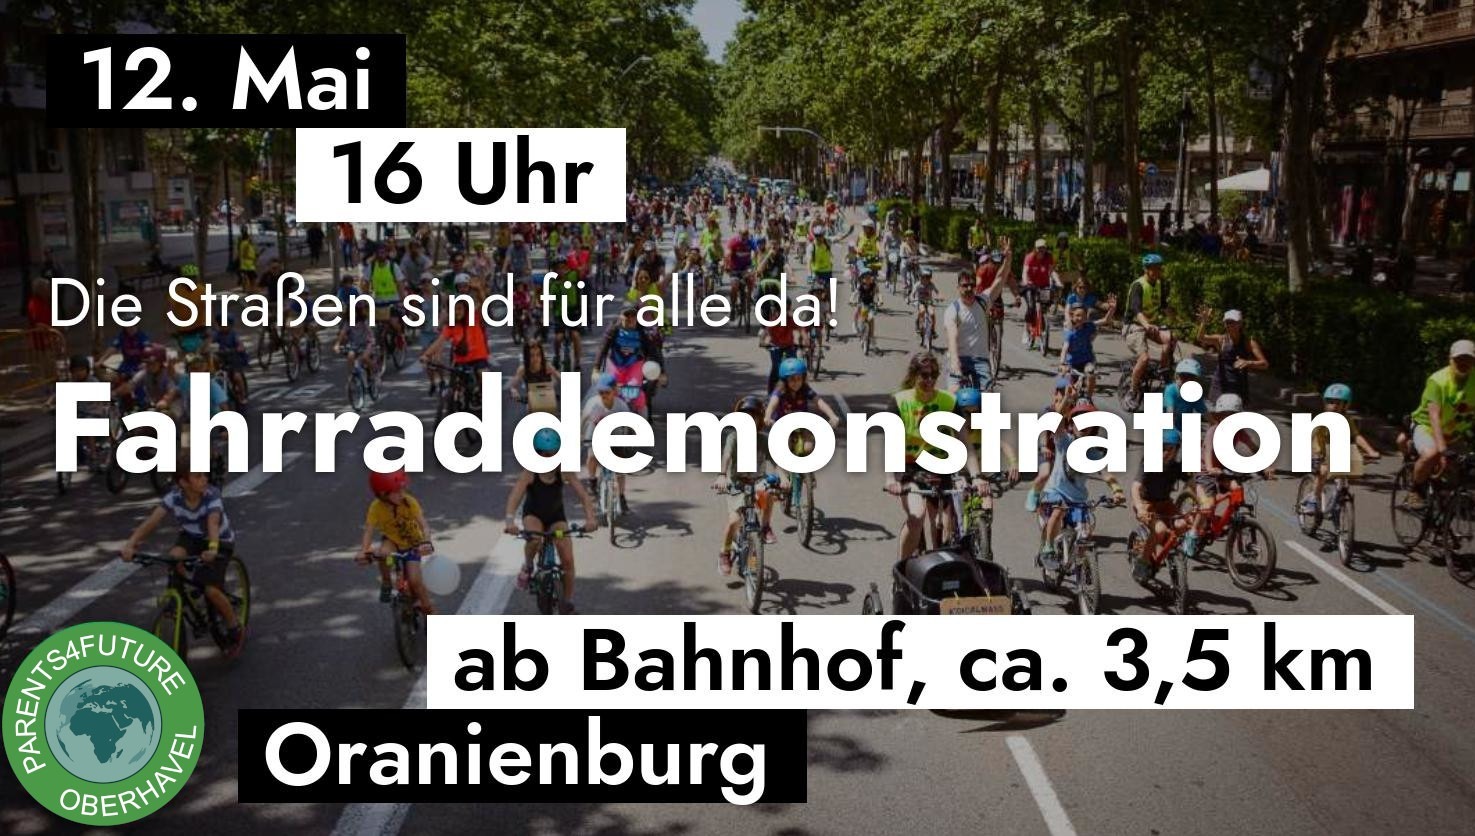 Fahrraddemo 12.5.23 Start um 16 Uhr am Bahnhof Oranienburg